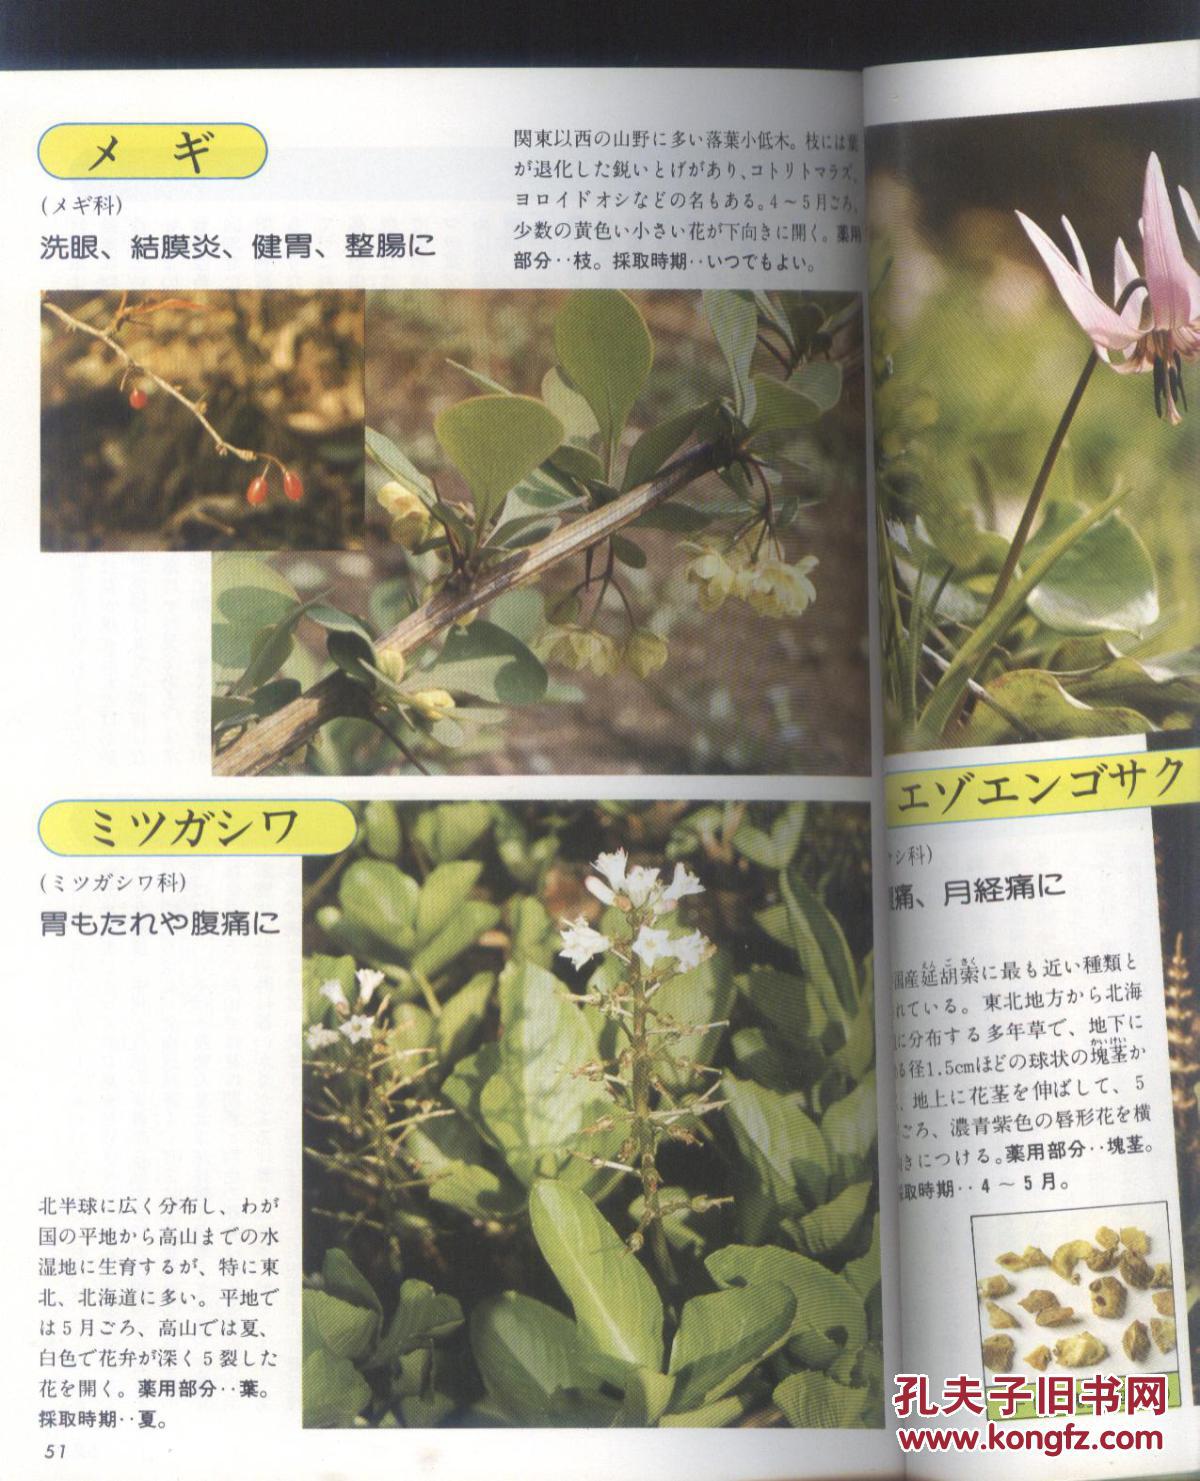 药草图鉴 疗效已确认的435种药草的写真 栽培法 采取法 日文原版 孔夫子旧书网